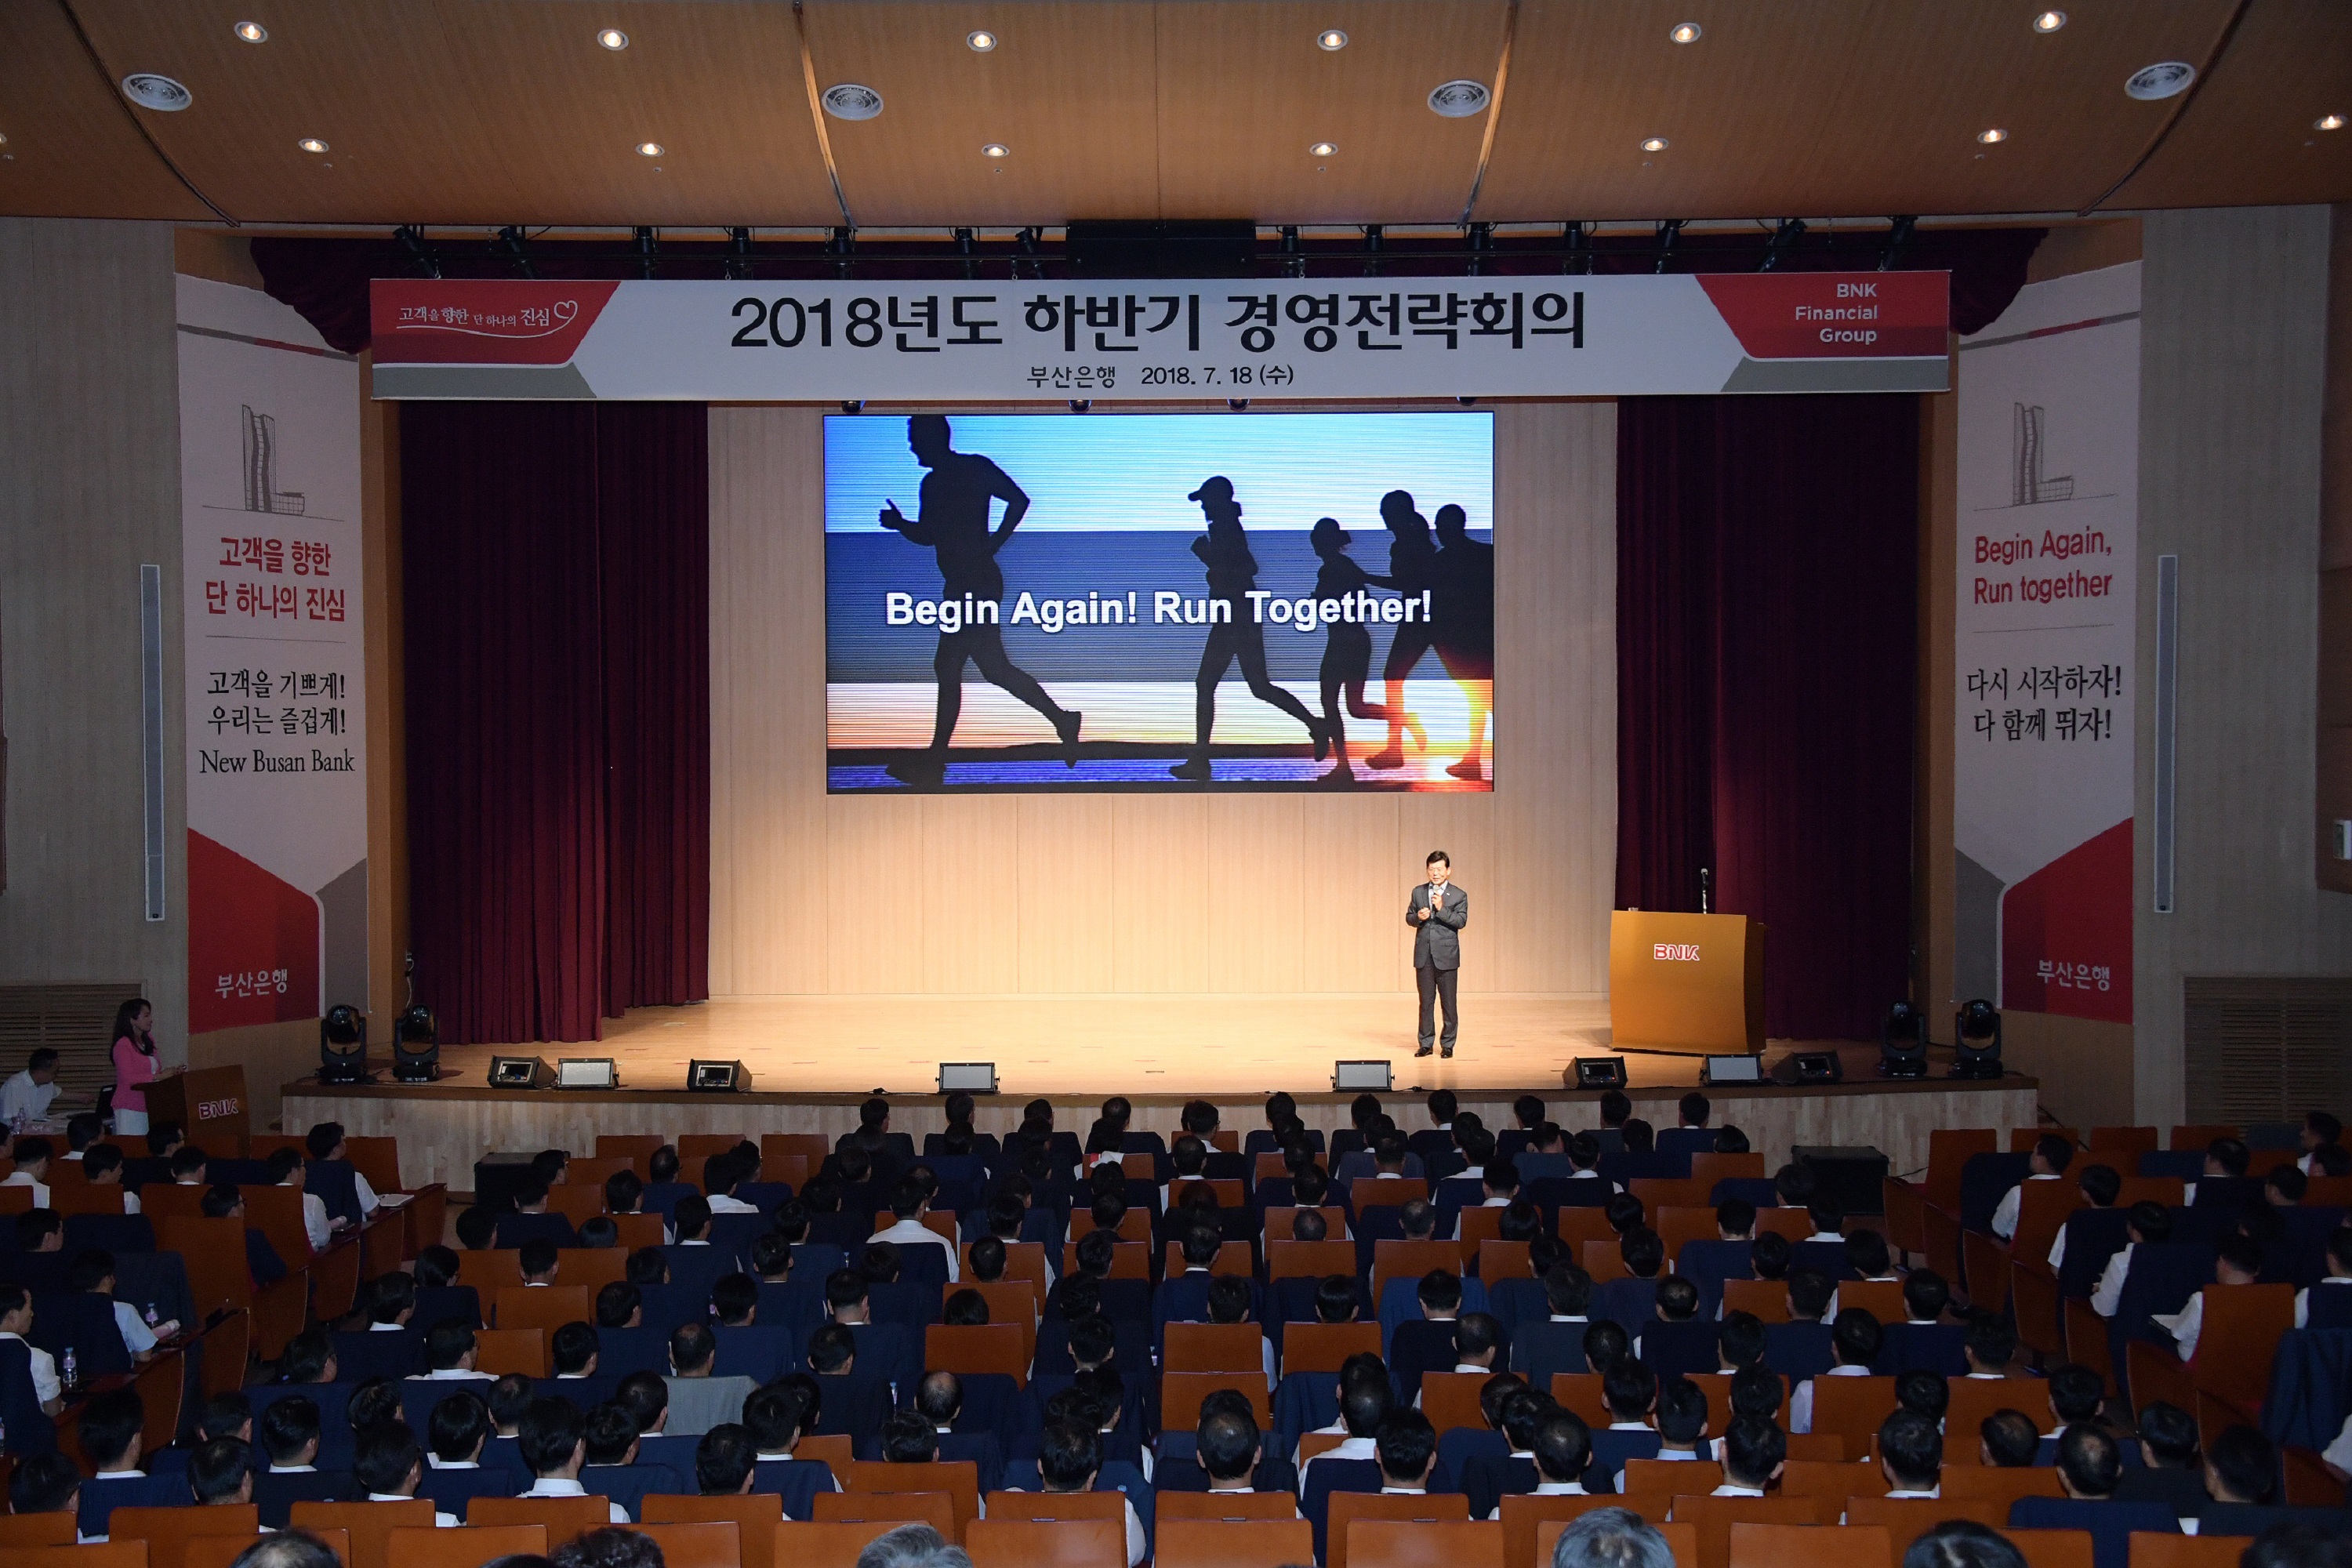 BNK부산銀, 2018년도 하반기 경영전략회의 개최